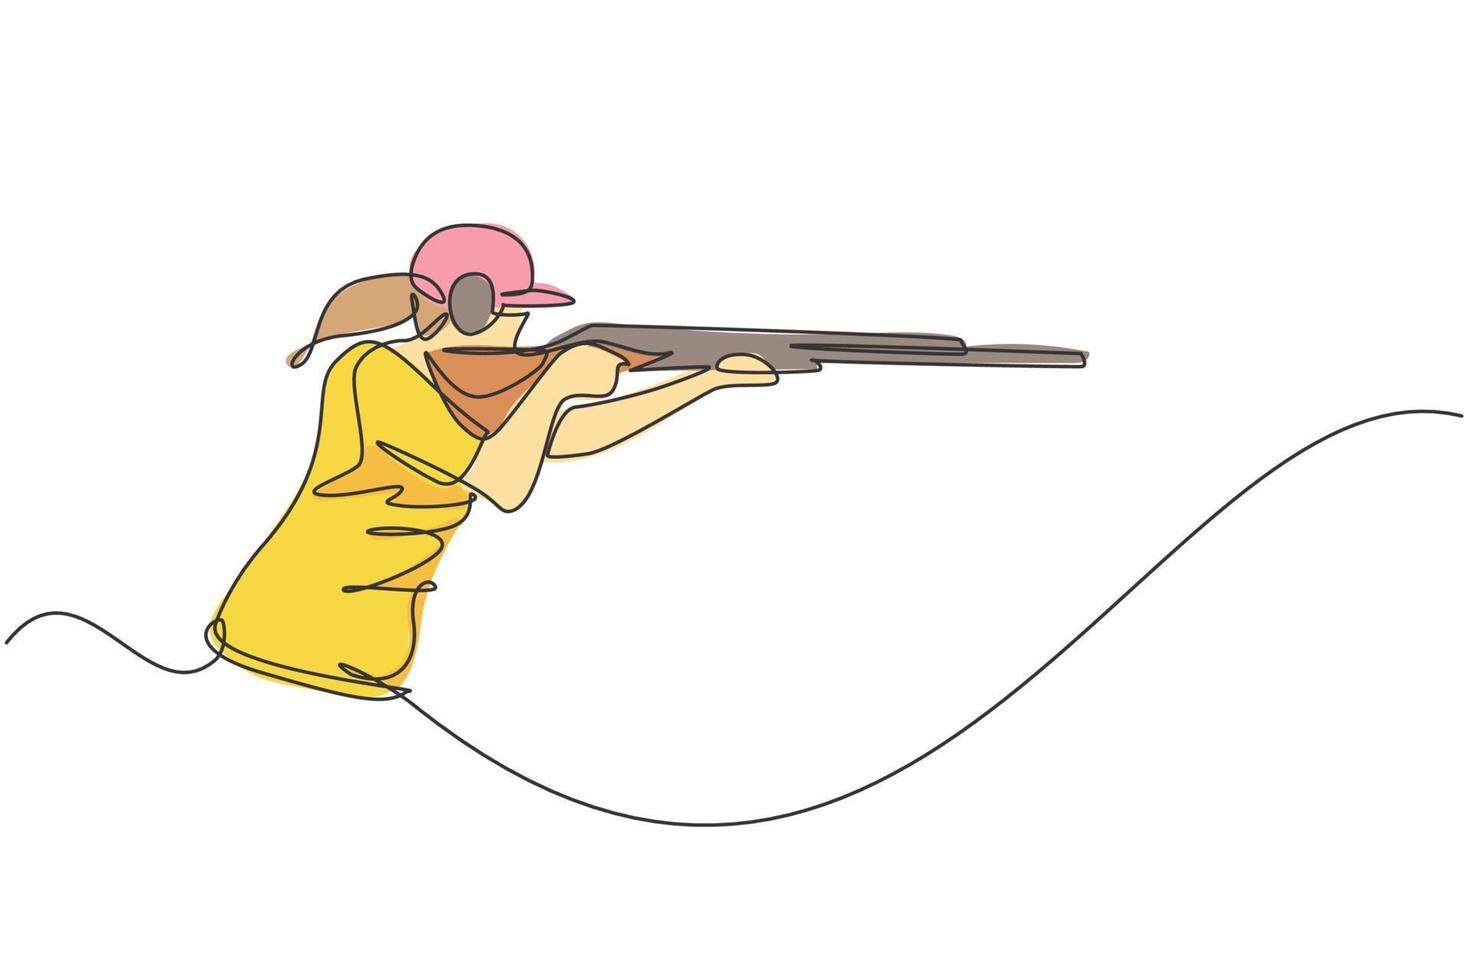 une ligne continue dessinant une jeune femme sur la pratique du terrain d'entraînement au tir pour la compétition avec un fusil à carabine. concept de sport de tir en plein air. graphique d'illustration vectorielle de conception de dessin à une seule ligne dynamique vecteur